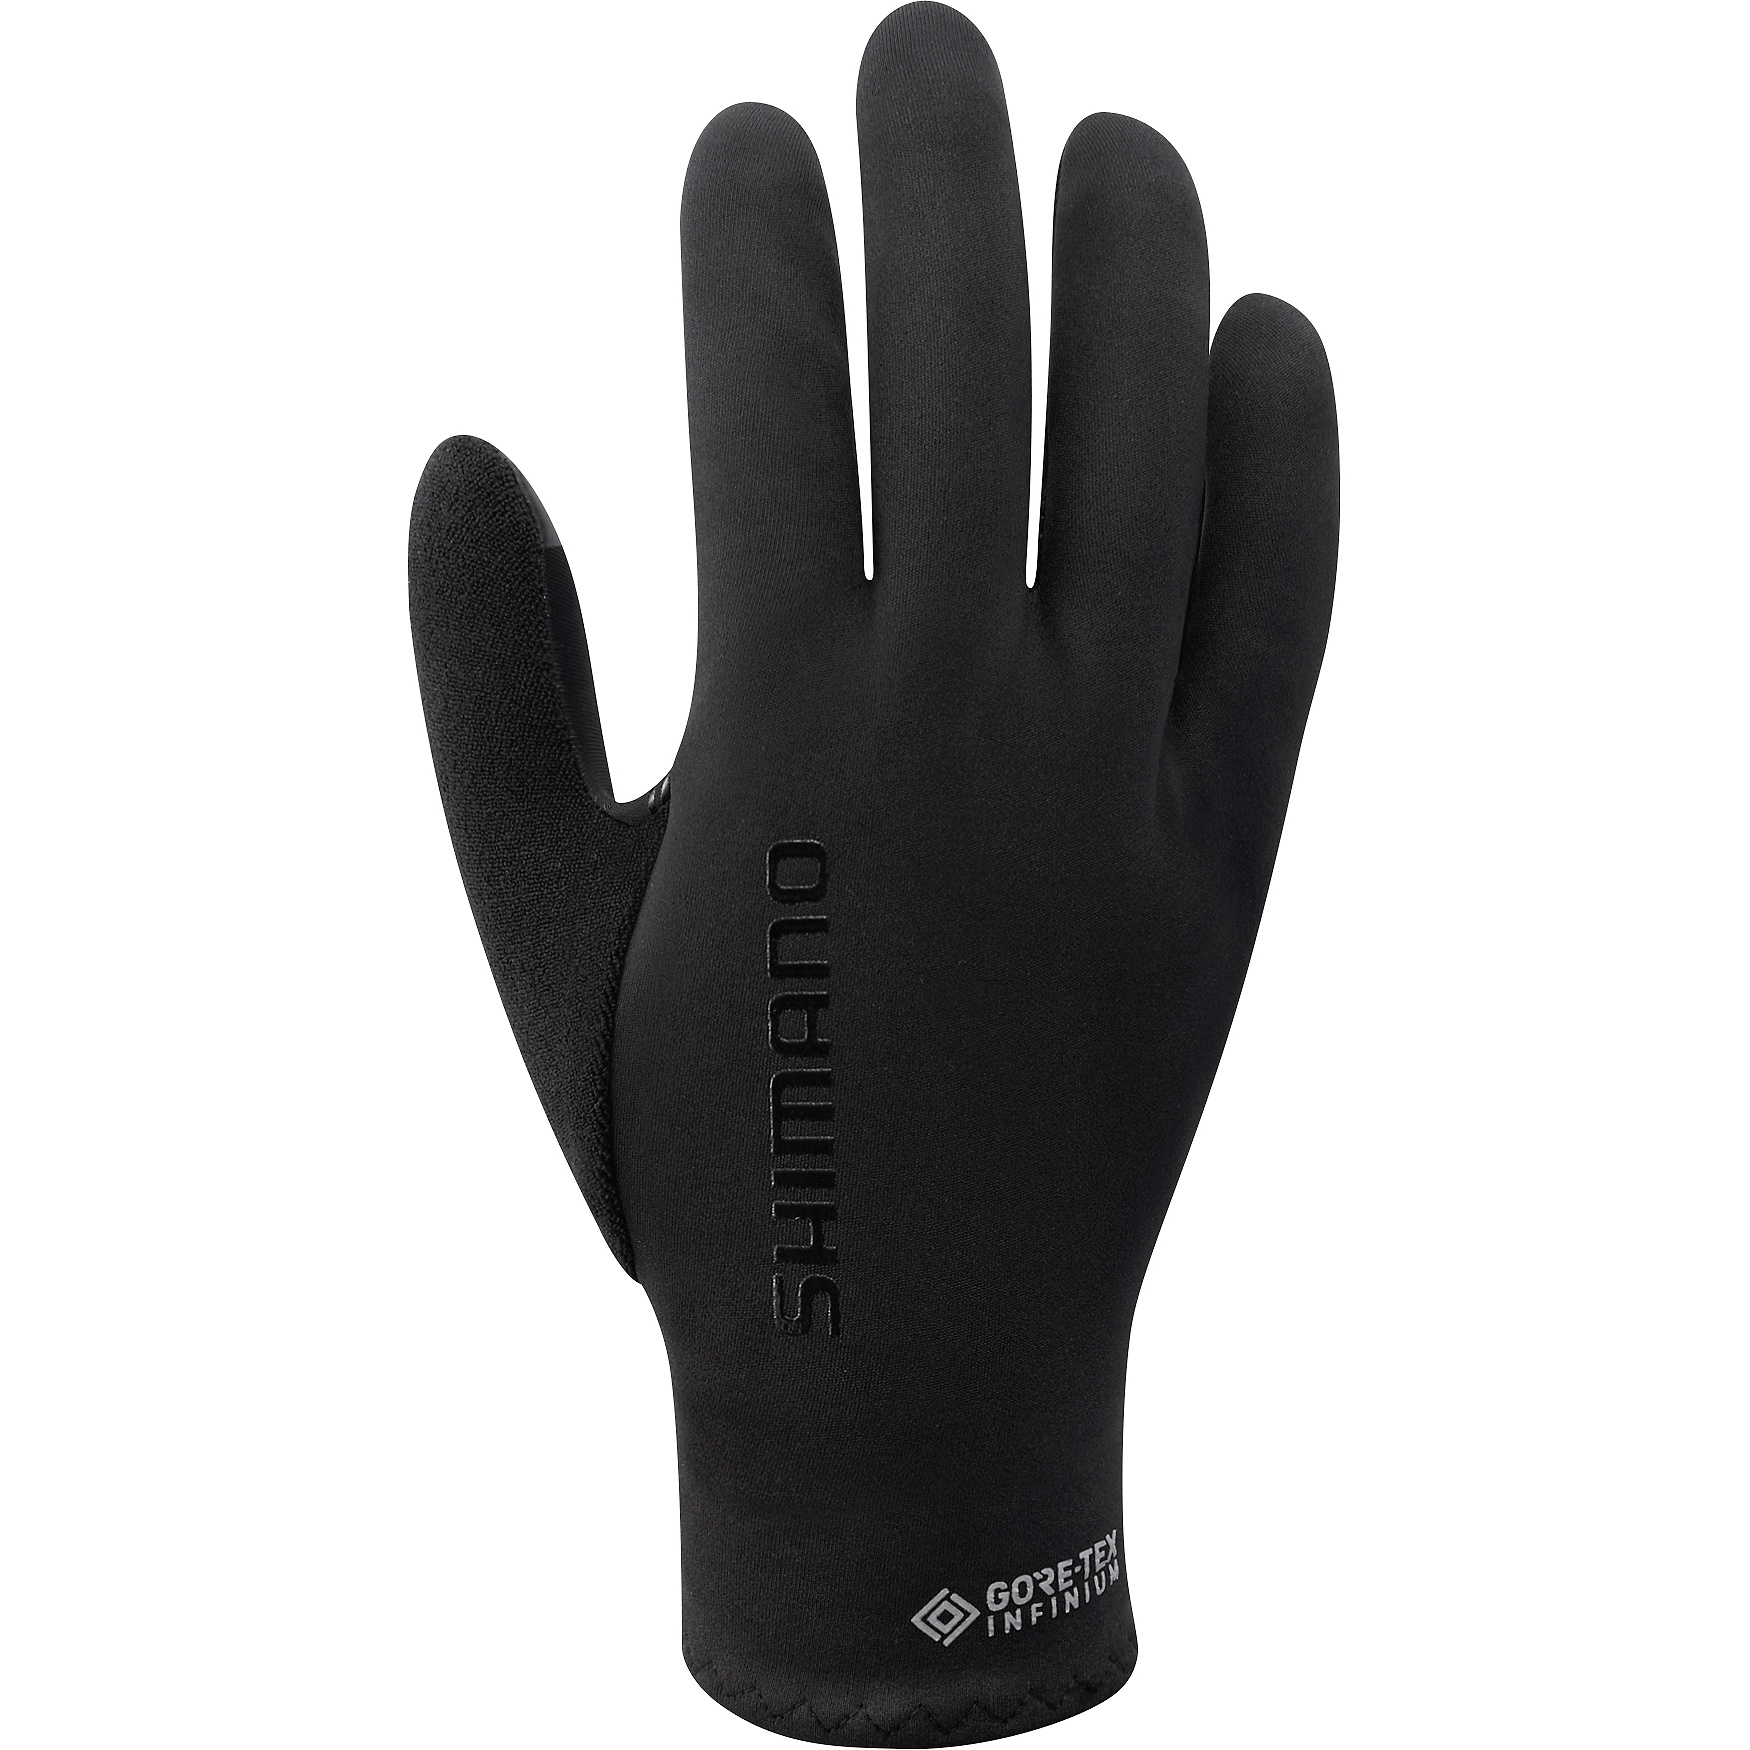 Produktbild von Shimano Infinium Race Handschuhe - black